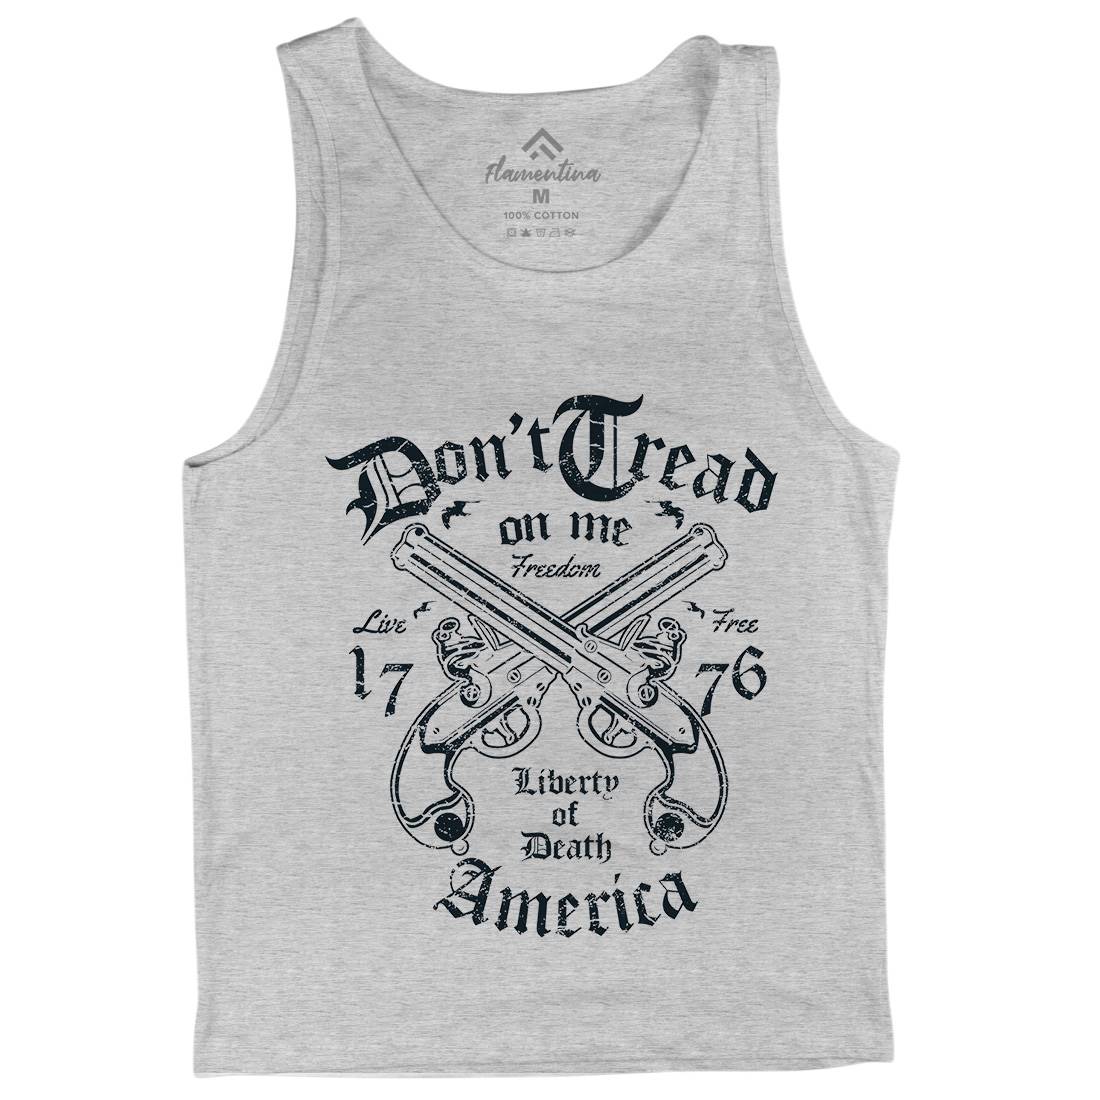 Liberty Of Death Mens Tank Top Vest American A084